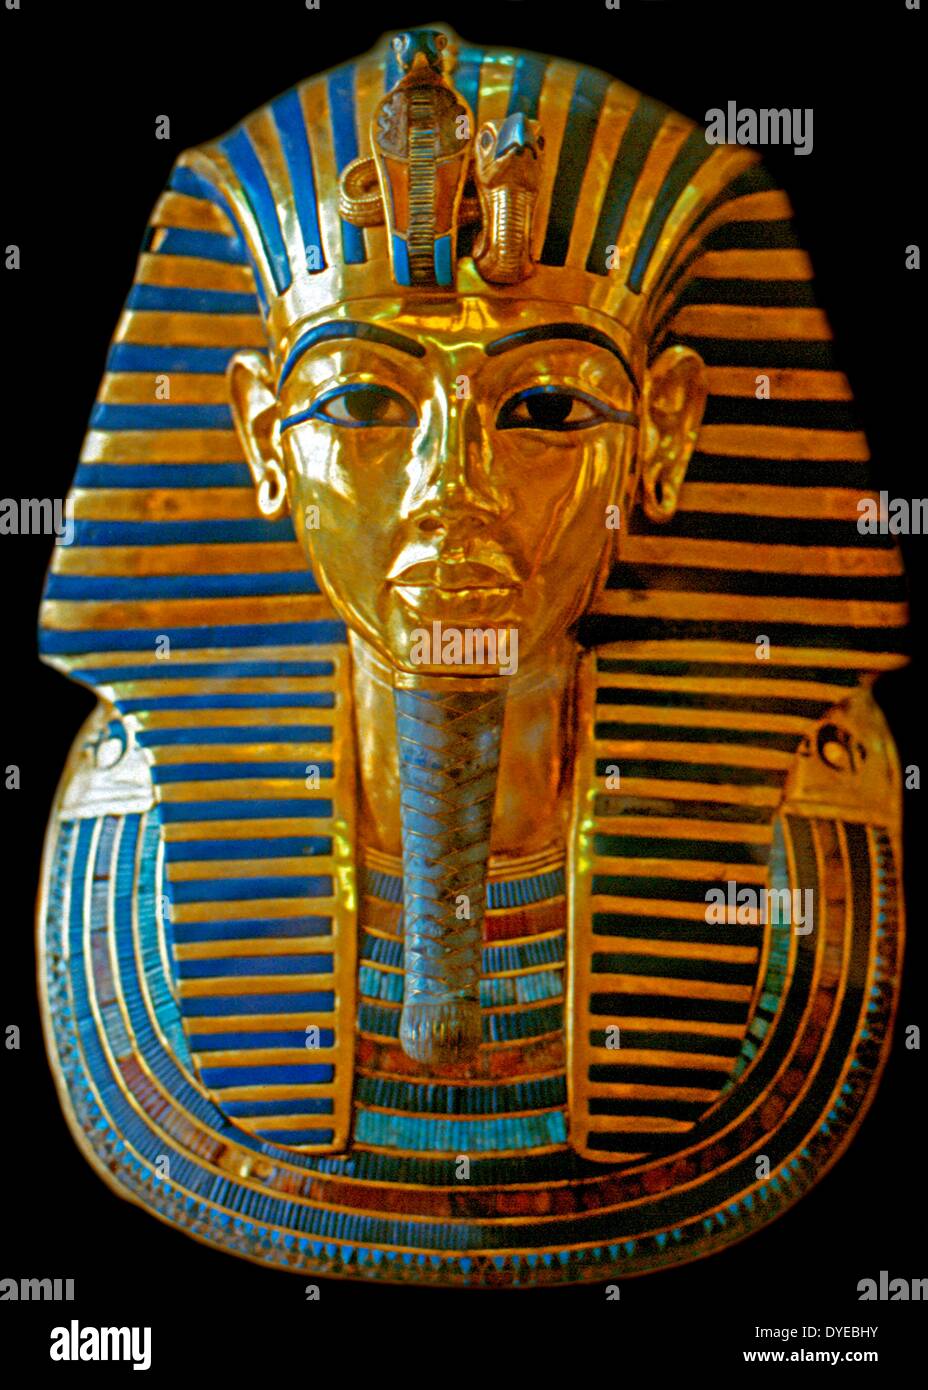 La maschera di Tutankhamon della mummia, la famosa icona di antico Egitto al Museo Egizio. Tutankhamon (in alternativa scritto con Tutankhamon). Il faraone egizio della XVIII dinastia (governata ca. 1332 BC - 1323 BC nella cronologia convenzionale), durante il periodo della storia egiziana conosciuta come il Nuovo Regno. Foto Stock